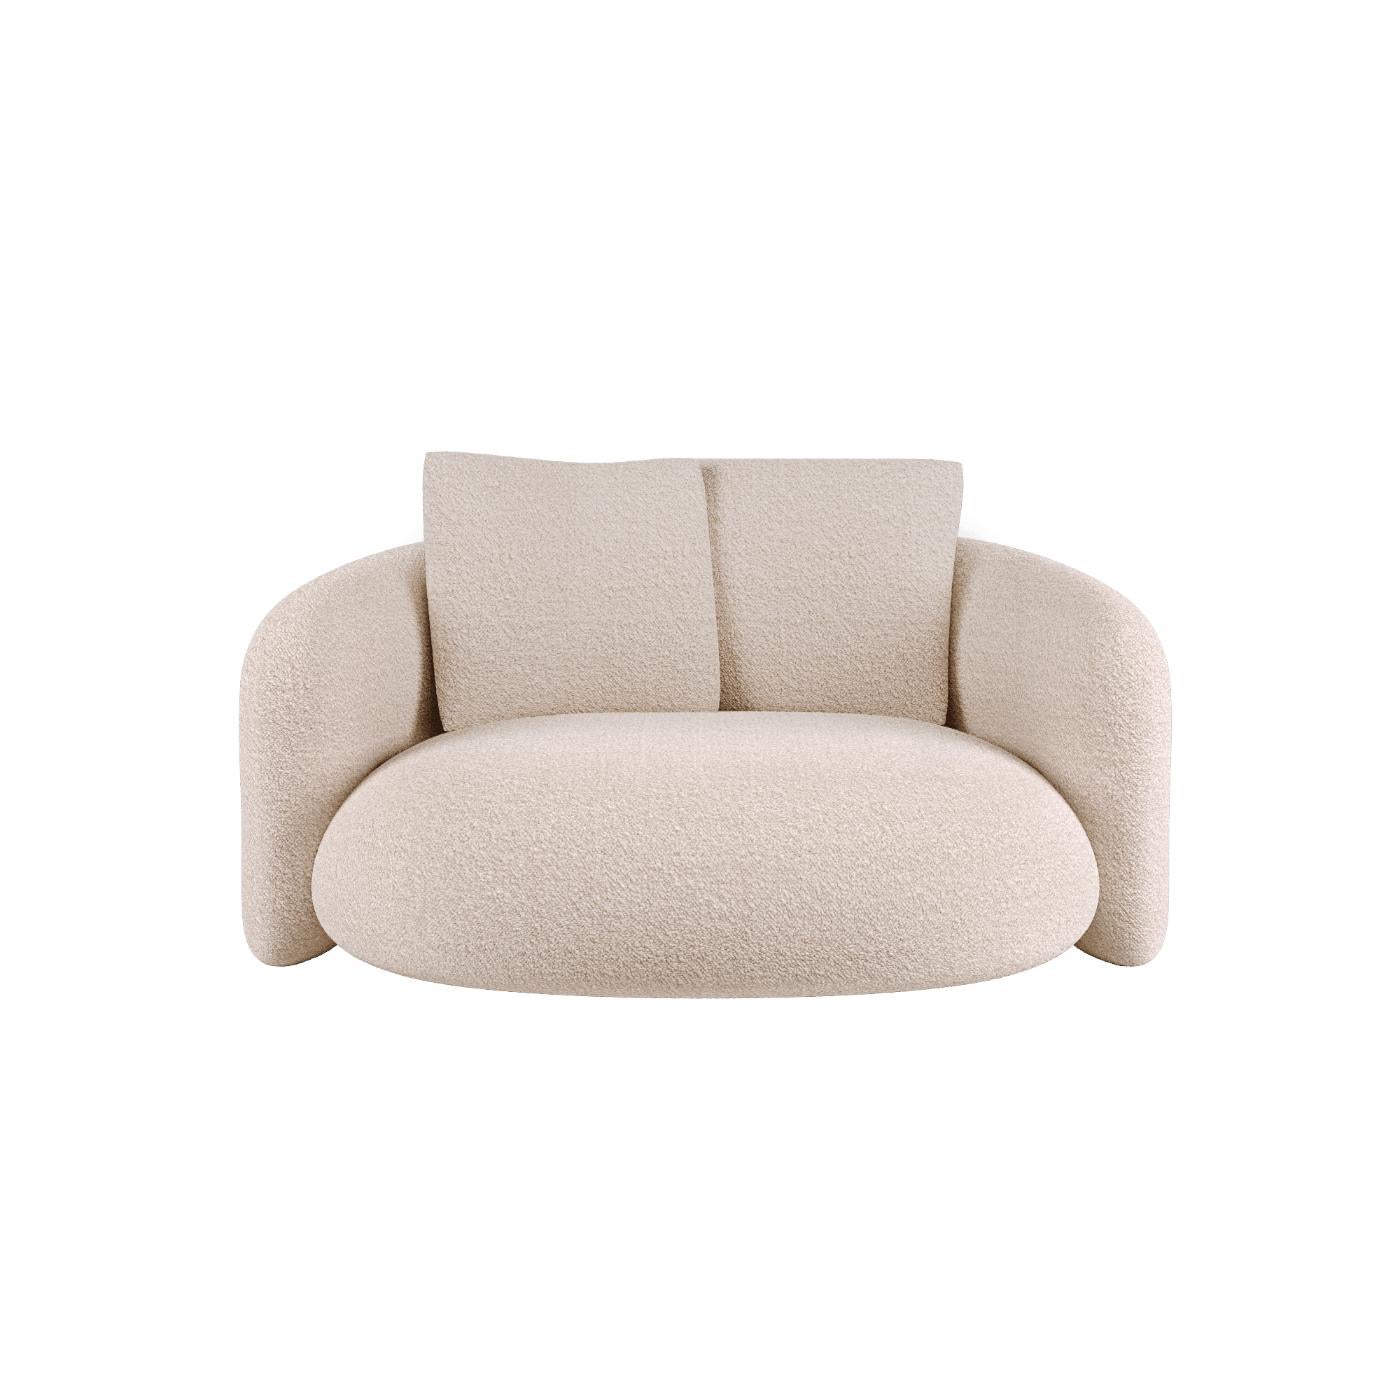 Lit Bold Love de Mohdern
Dimensions : L 170 x D 170 x H 75 cm
MATERIAL : Tissu, Bouclé


Bold est une collection de meubles raffinés conçue et produite par la marque Mohdern. La série comprend le fauteuil et la chaise longue, le canapé en différents